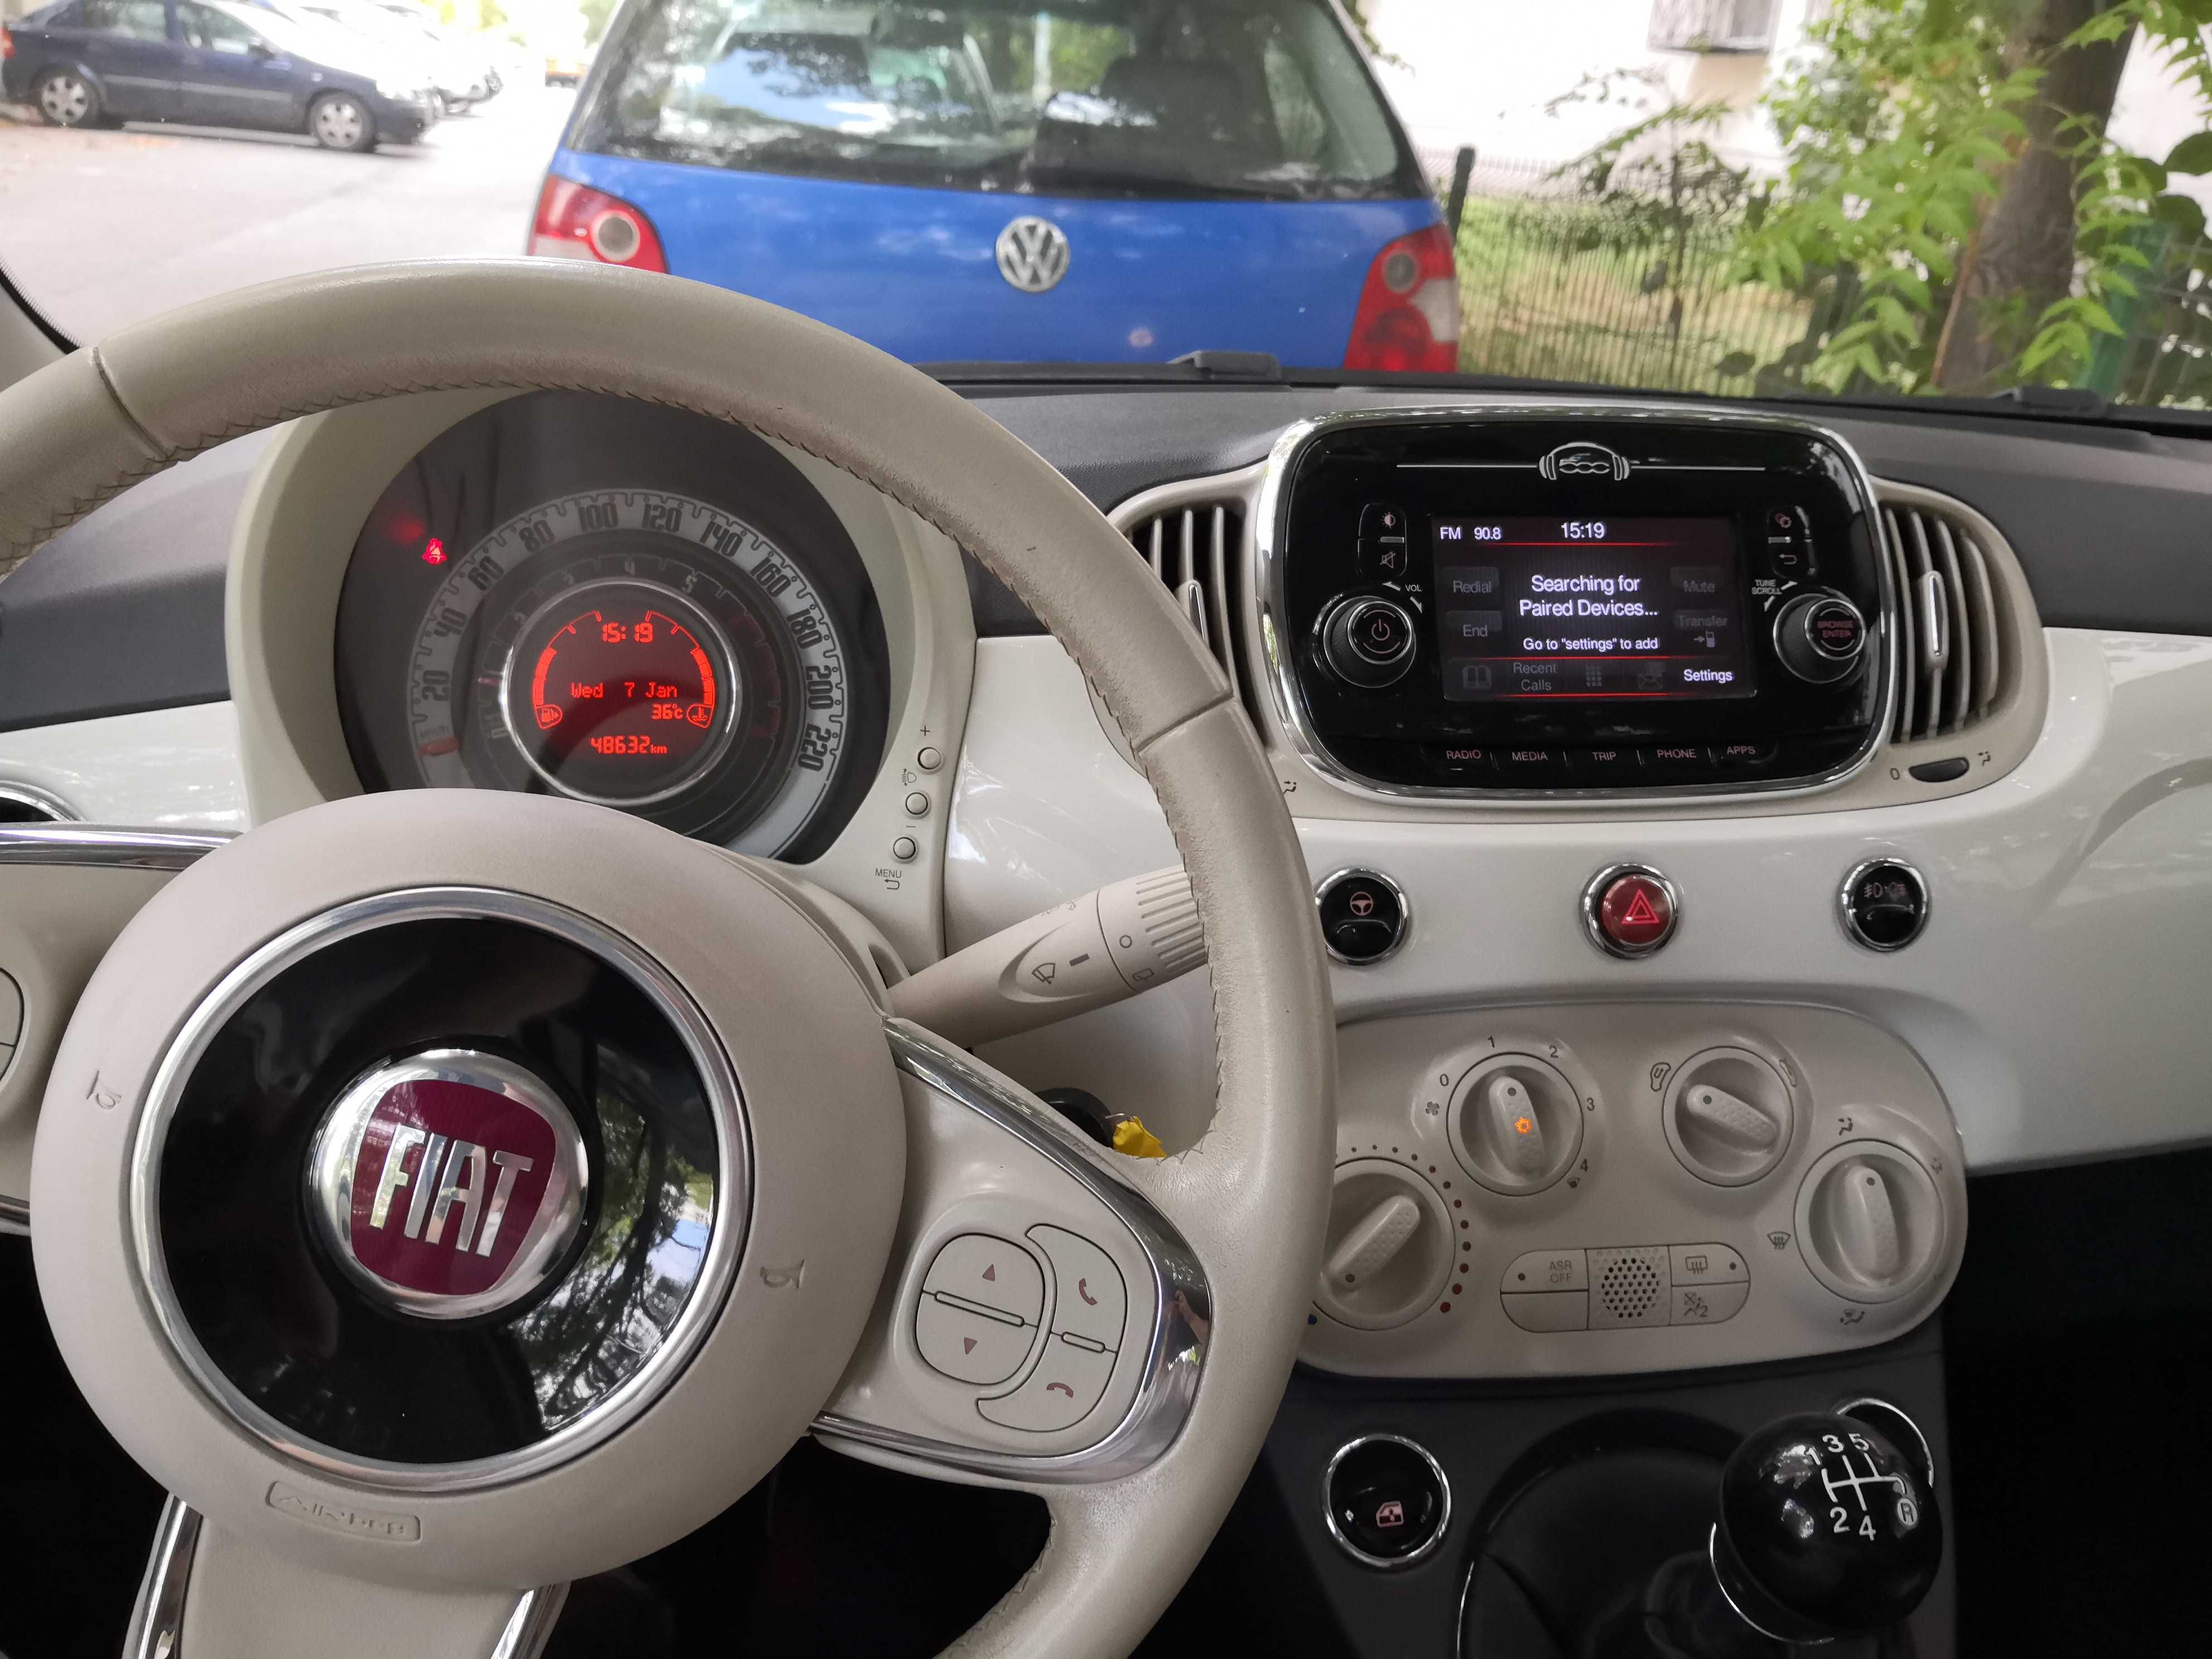 Fiat 500 2016 benzina